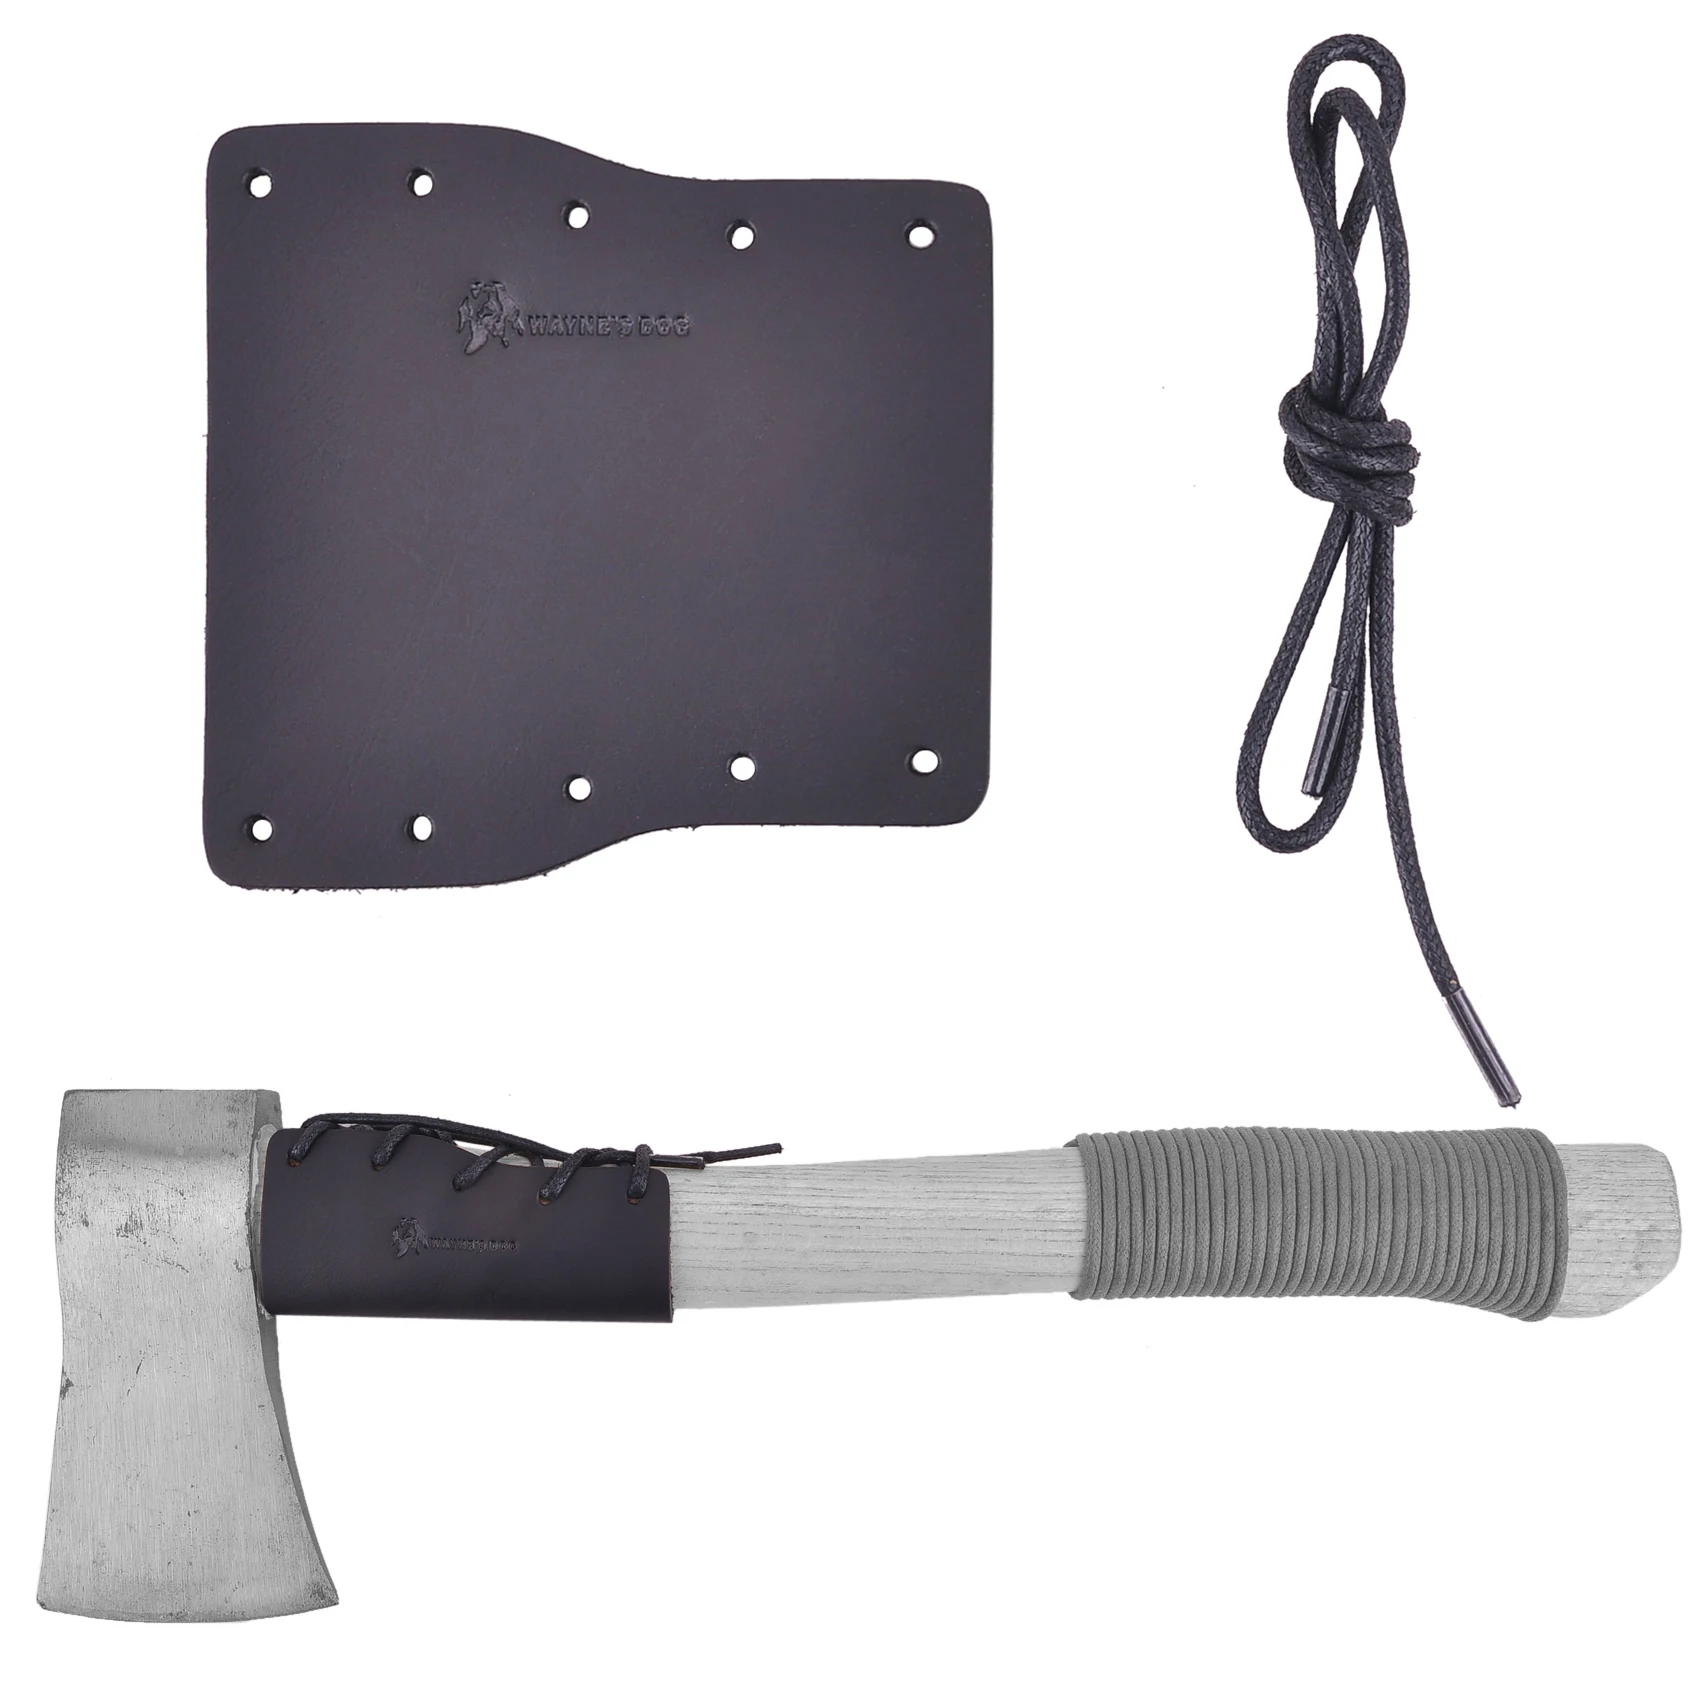 Handmade Leather Axe Handle Collar Guard Axe Holster Hatchet Protector Cover for  For Camping Axes Garden Picks